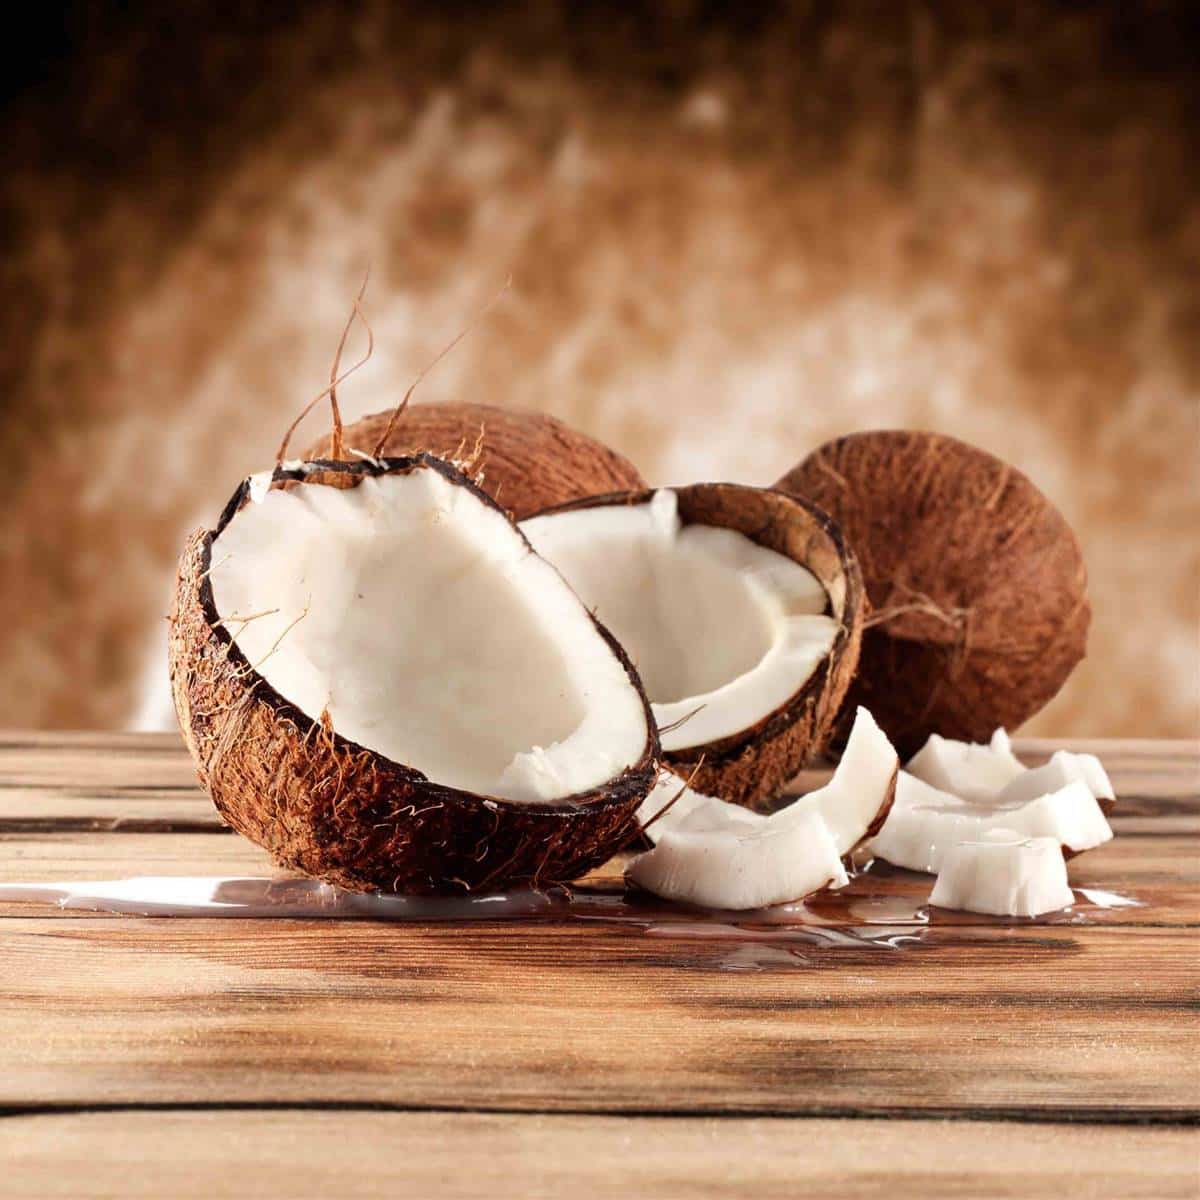 Beneficios y propiedades del coco, fruta considera como exótica